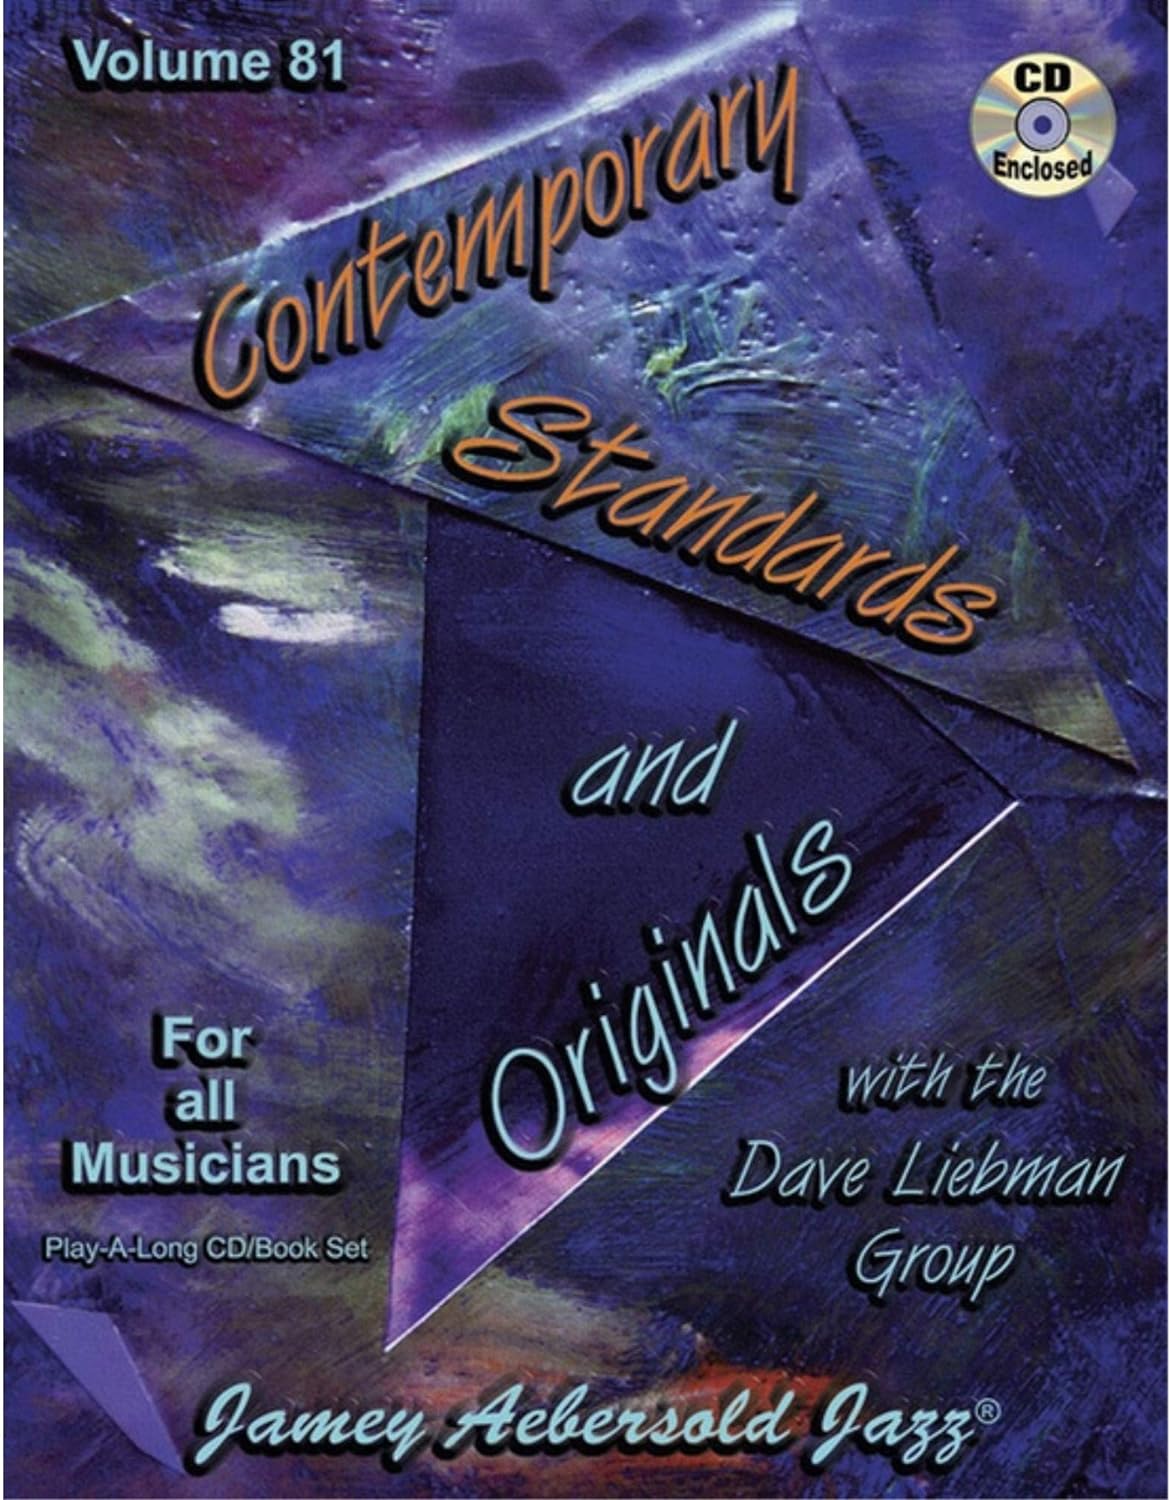 Standards & originals..Aebersold volume 81